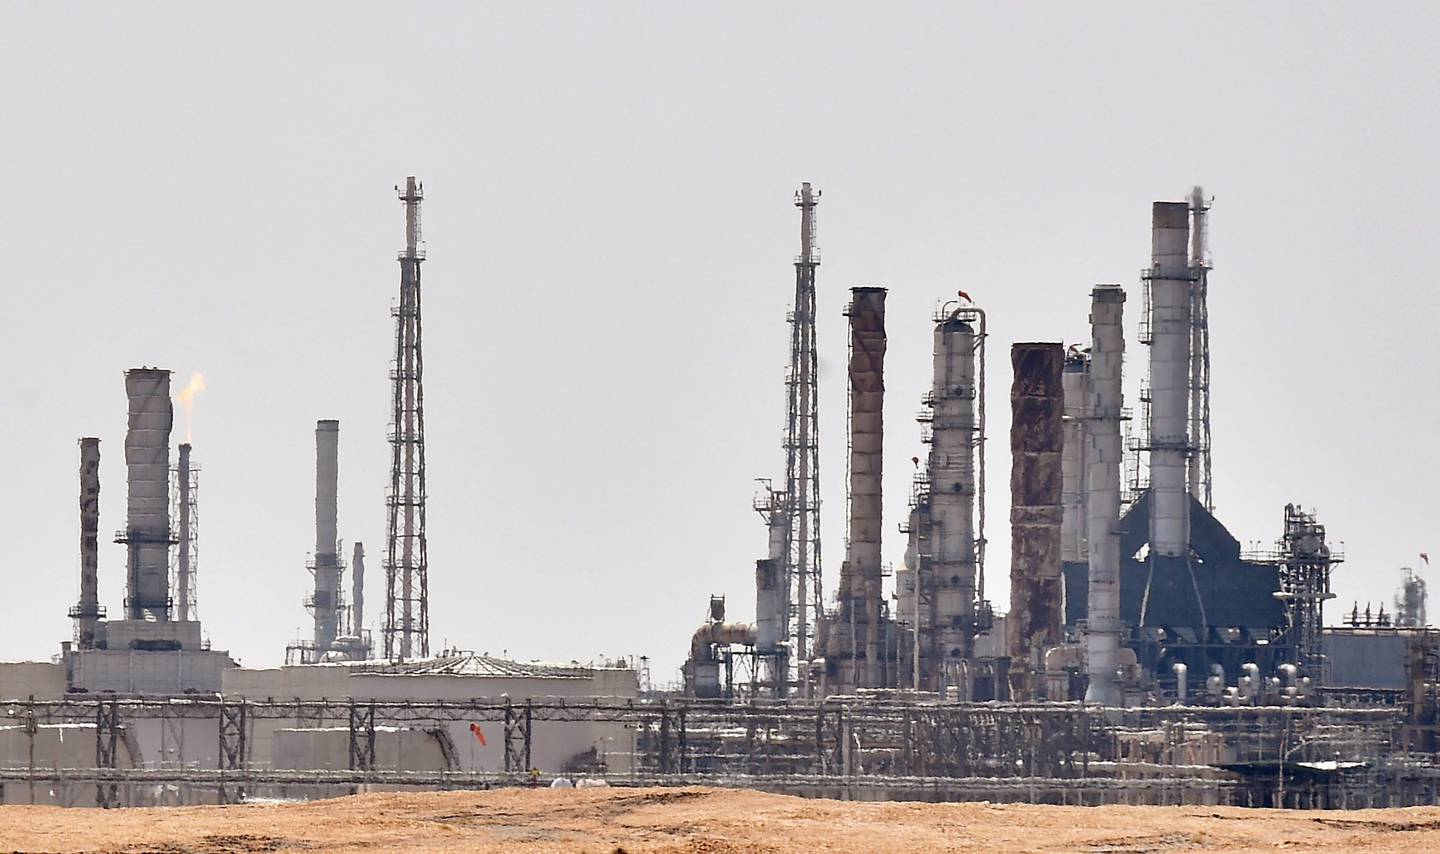 An Aramco oil facility just south of the Saudi capital Riyadh. AFP